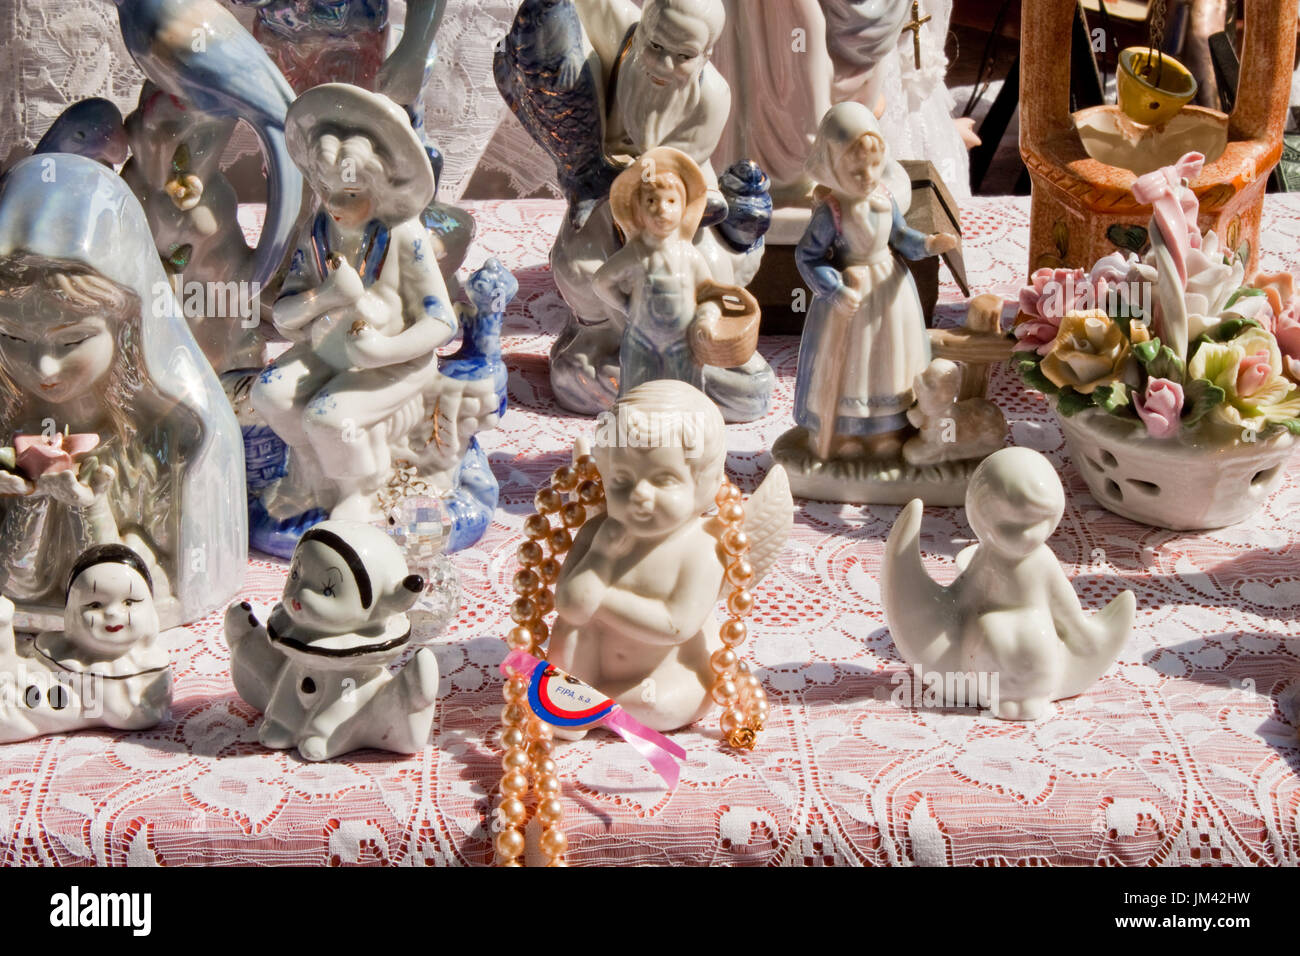 Barcelona, Spanien - 26. September 2014: Vintage Porzellanfiguren zum Verkauf auf einem Flohmarkt. Stockfoto